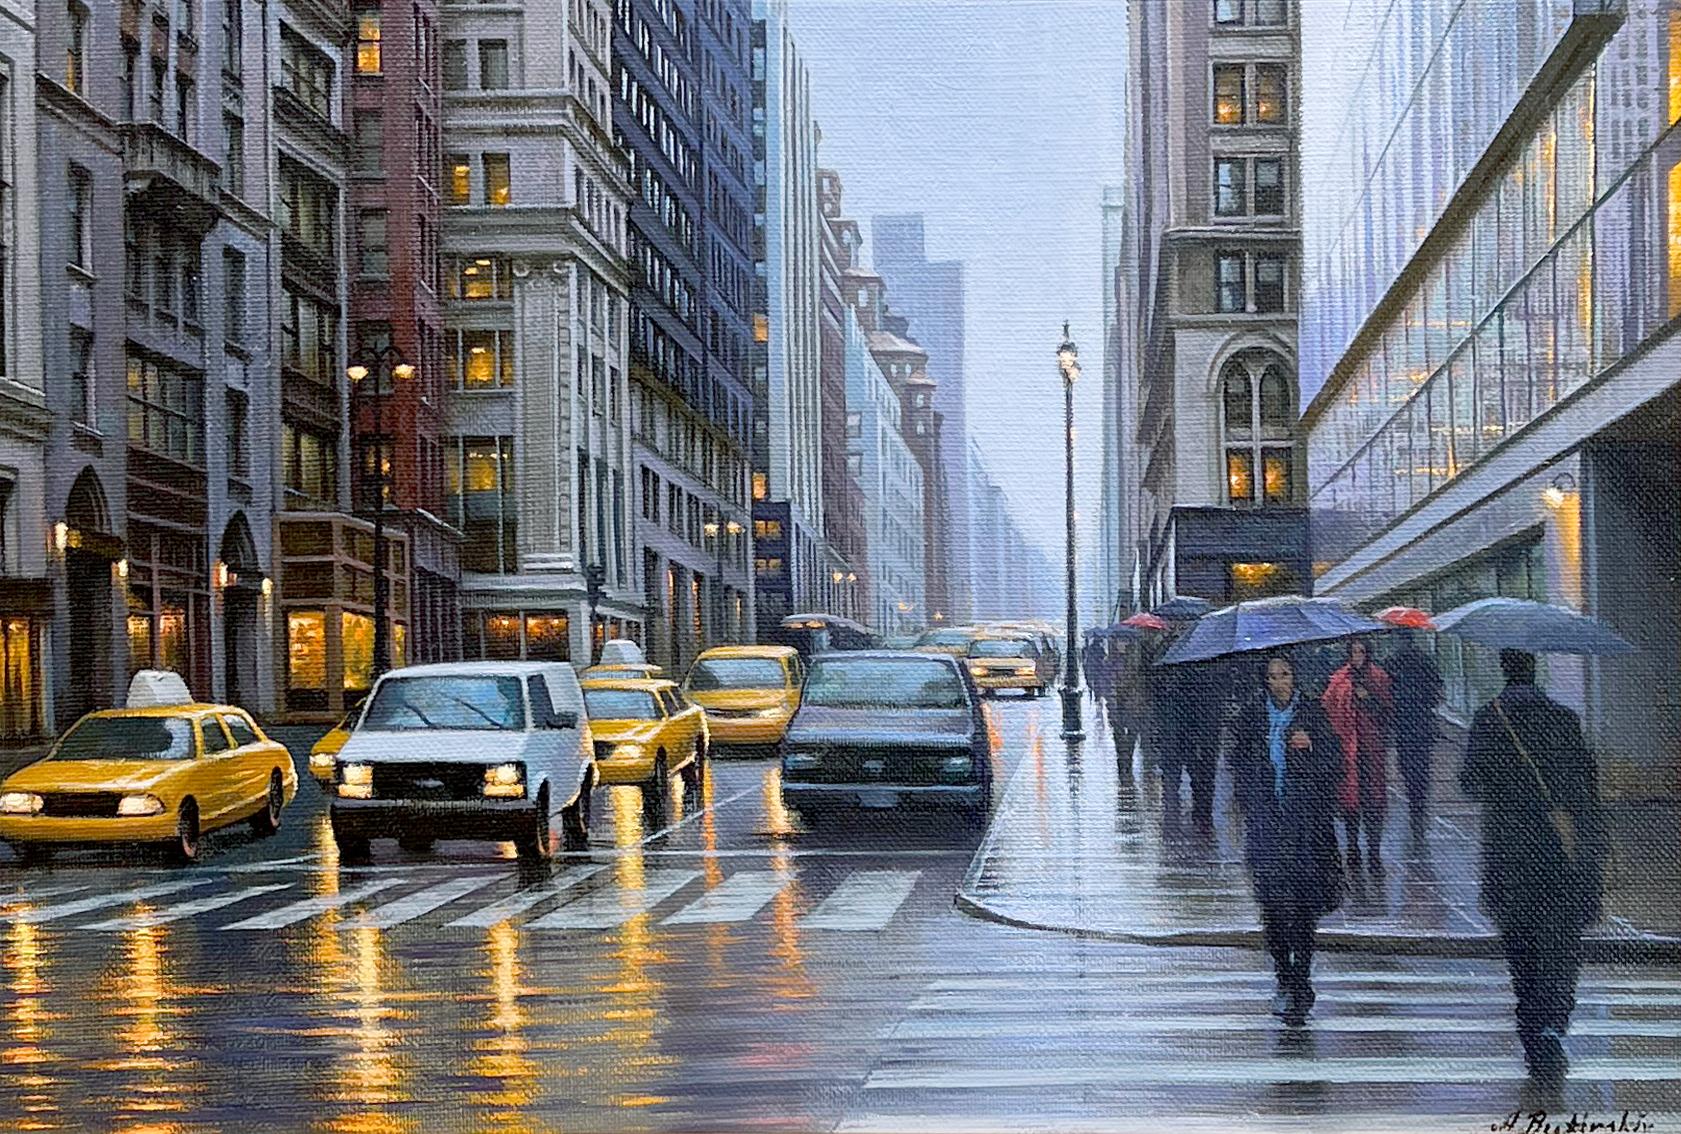 Dieser Beitrag, "N.Y. Cabbies", ist ein Ölgemälde im Format 14x20 auf Leinwand des Künstlers Alexei Butirskiy, das den Blick auf eine belebte Straße in Manhattan, New York City, an einem regnerischen Tag zeigt. Fußgänger drängen sich auf den